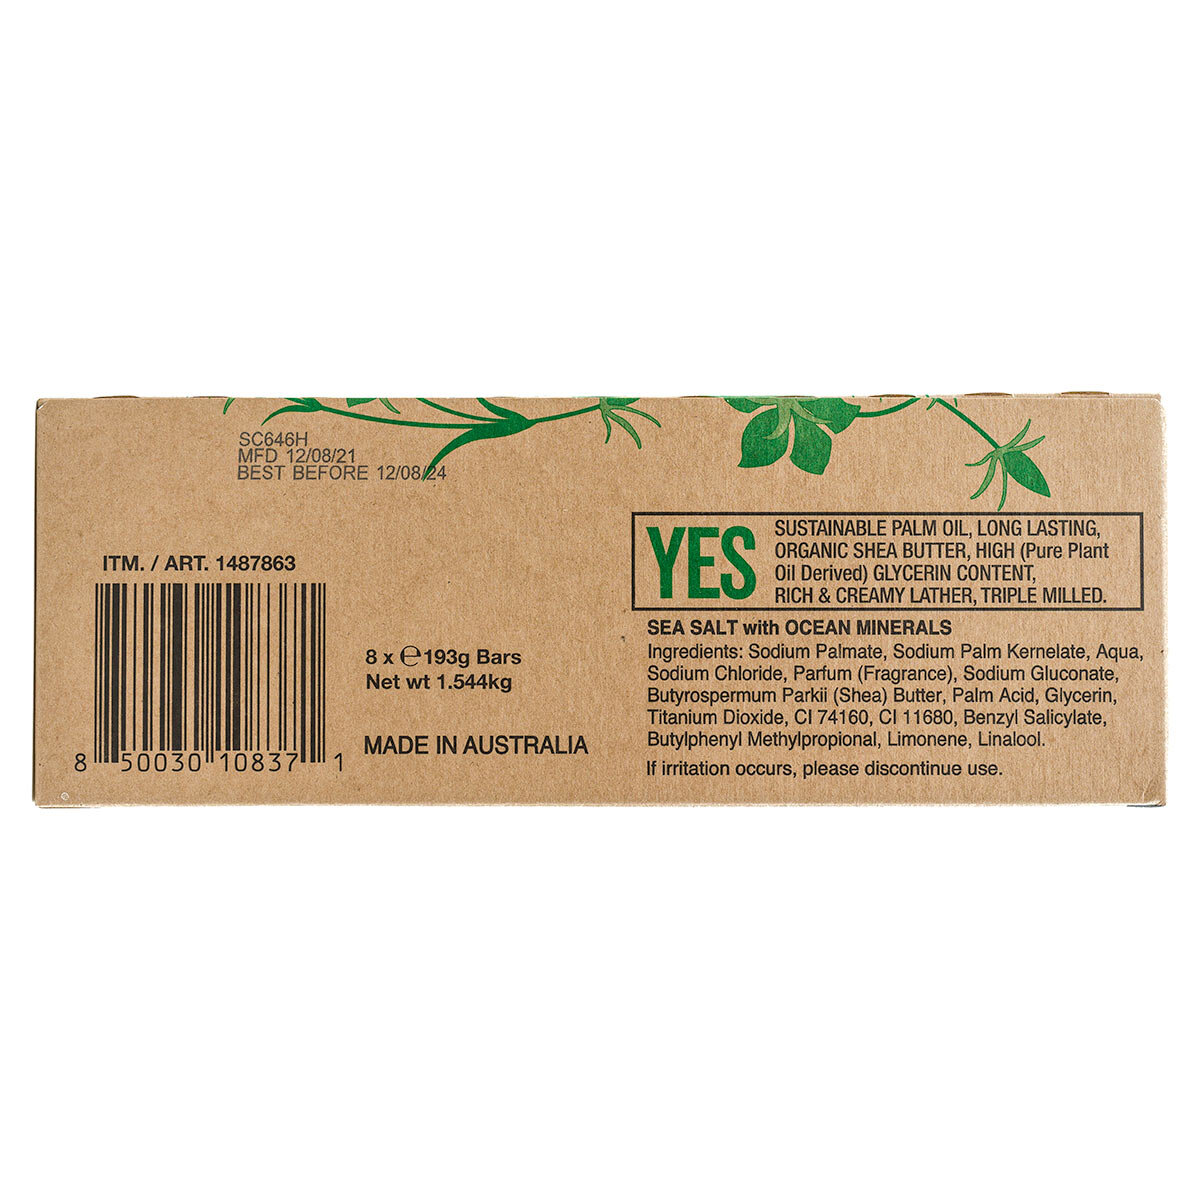 Australian Botanical Soap Goat's Milk & Soya Bean Oil Pure Plant Oil Soap 6.8 oz. 193g Bars - 8 Count